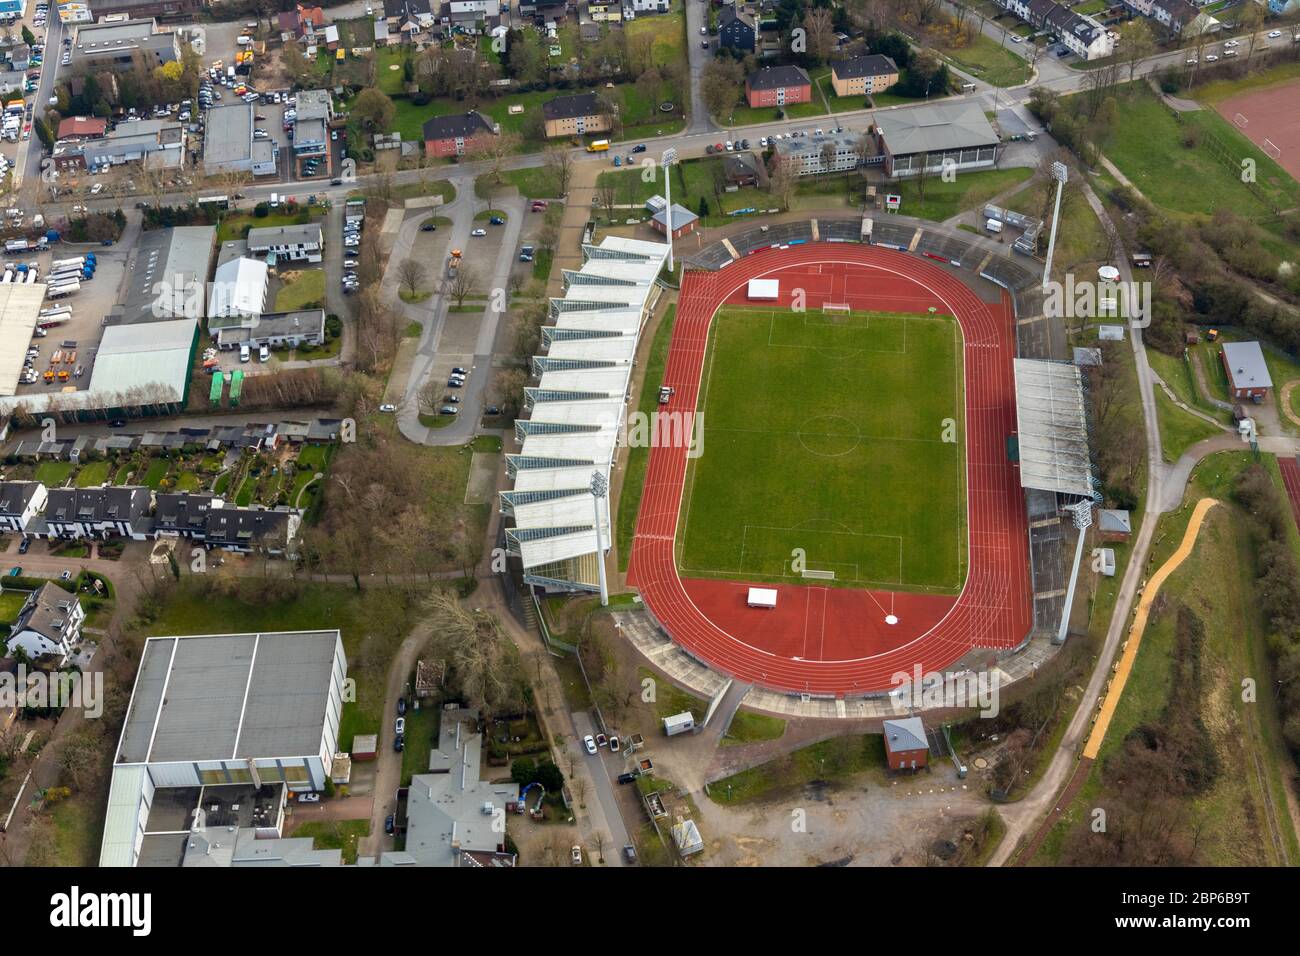 Luftaufnahme, Lohrheidestadion ist ein Fußballstadion mit Leichtathletikanlage im Bochumer Stadtteil Wattenscheid. SG Wattenscheid 09, Leithe, Bochum, Ruhrgebiet, Nordrhein-Westfalen, Deutschland Stockfoto